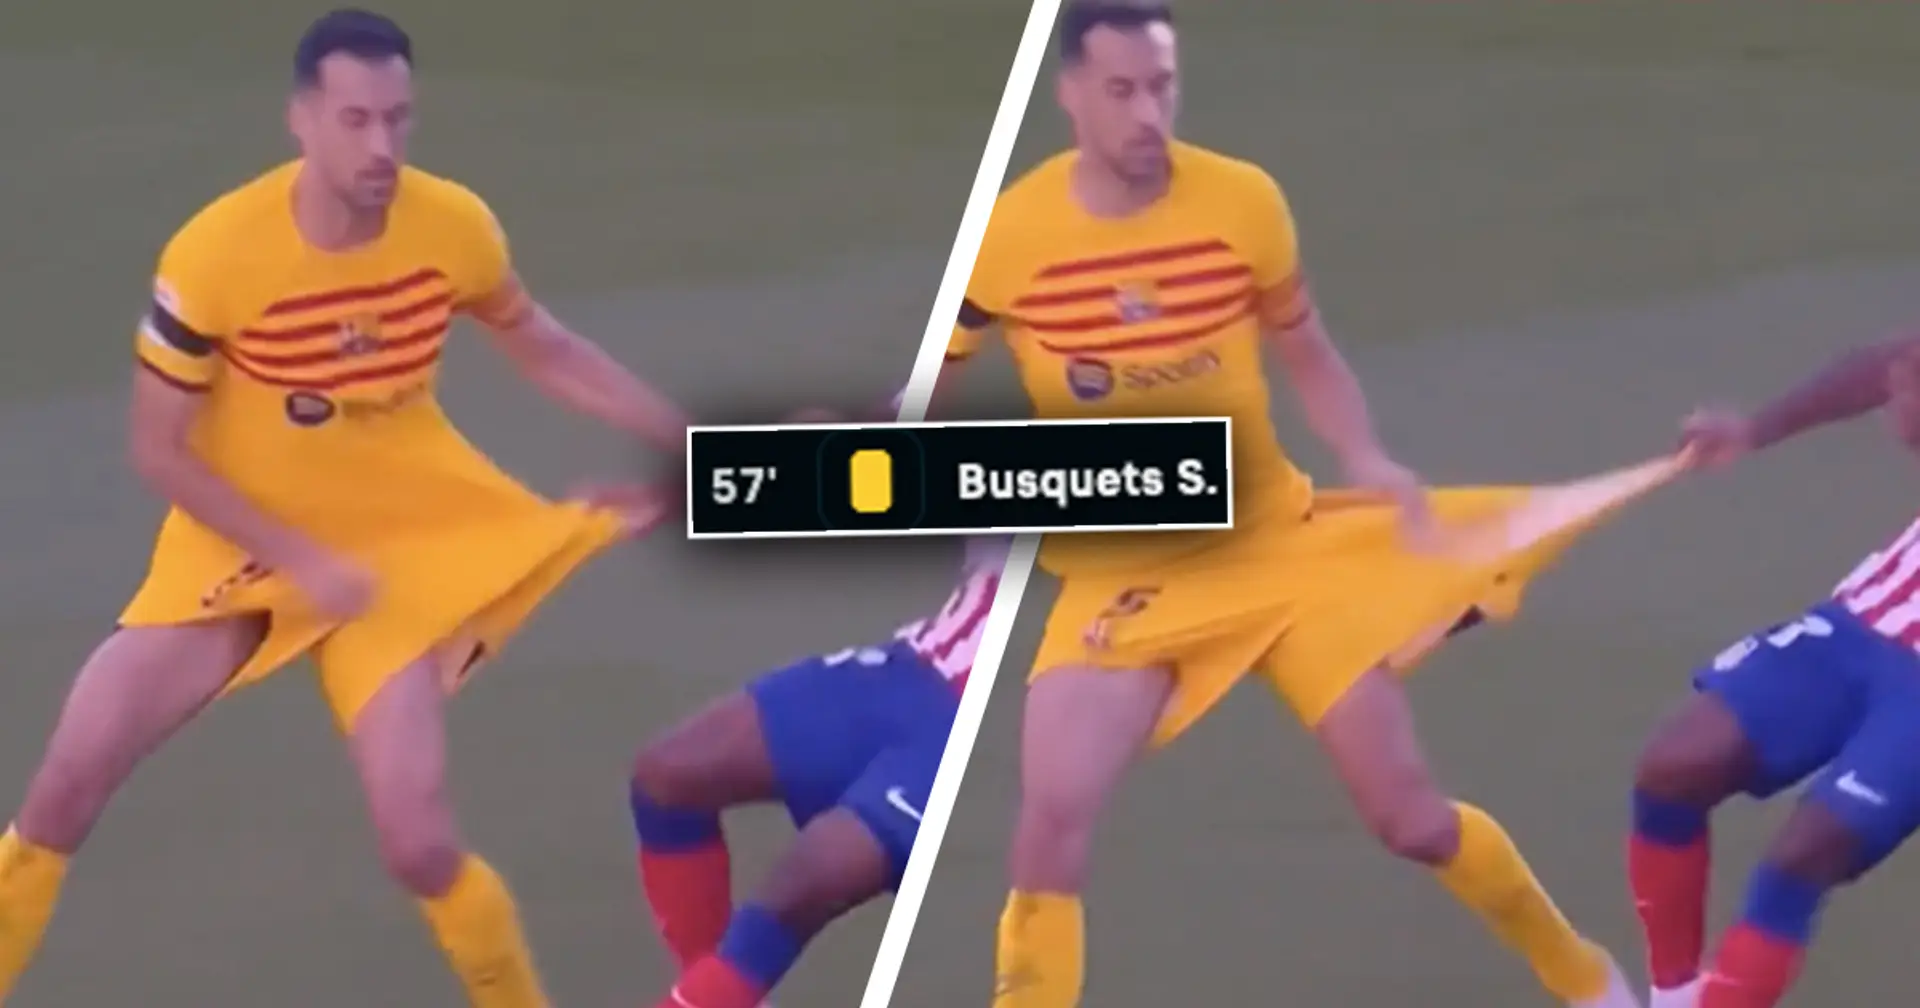 Pris en photo: Lemar déchire le short de Busquets, le vétéran du Barça est sanctionné